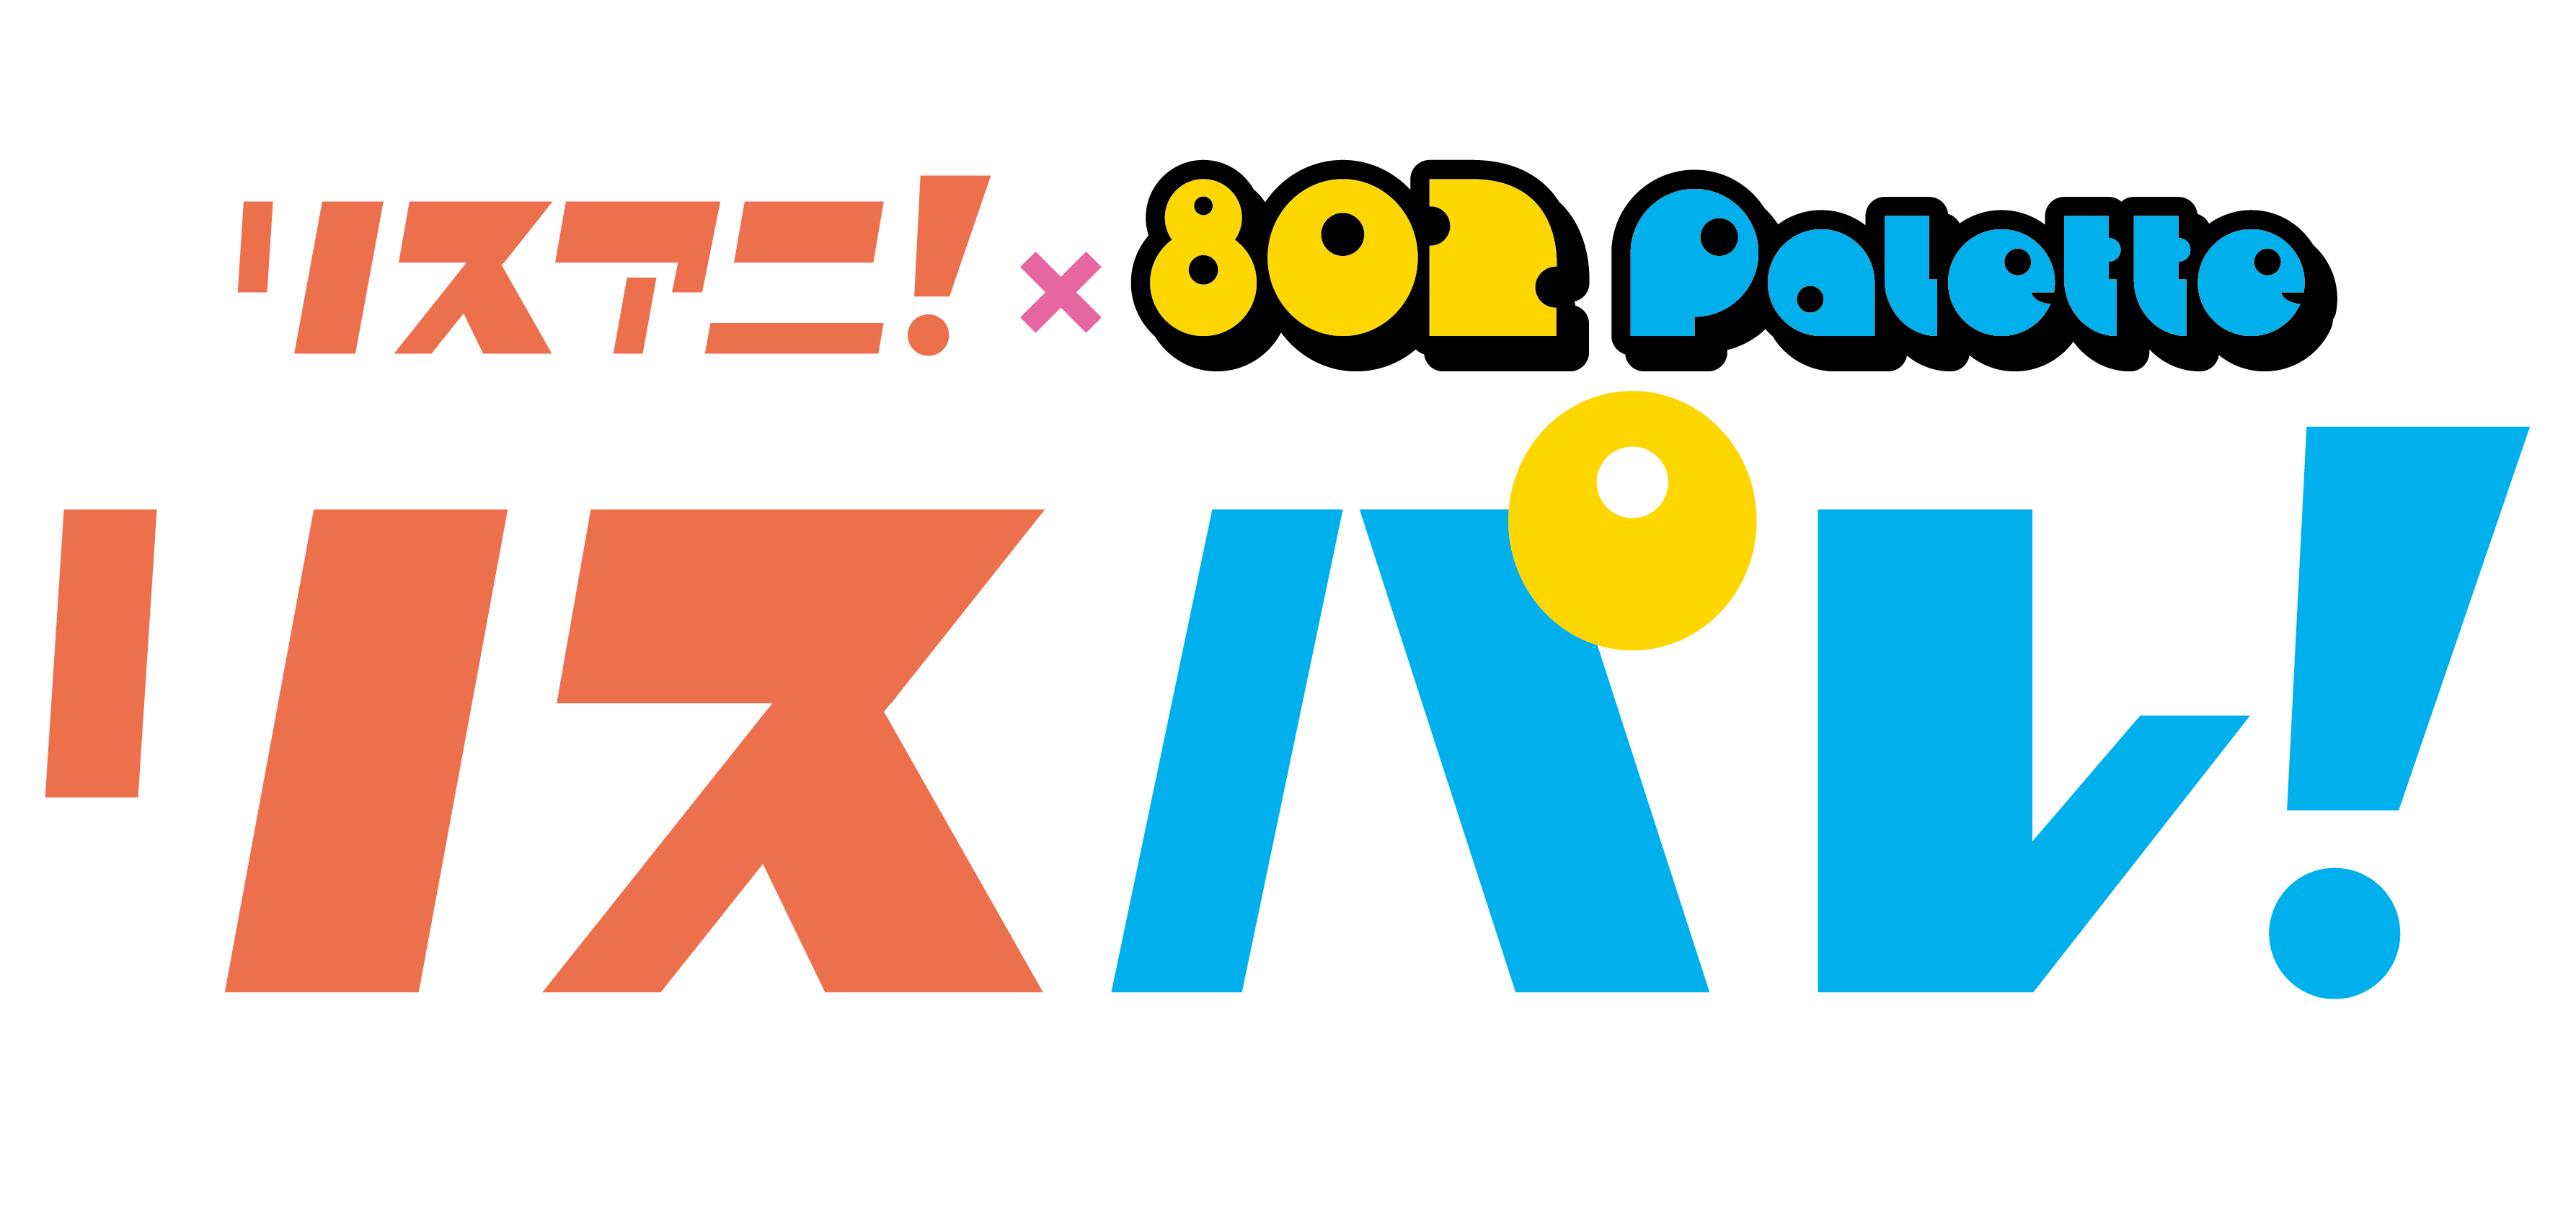 アニメ音楽メディア「リスアニ！」と
FM802のラジオ番組「802 Palette」による
“文字と波”の新・音楽メディア「リスパレ！」が始動！